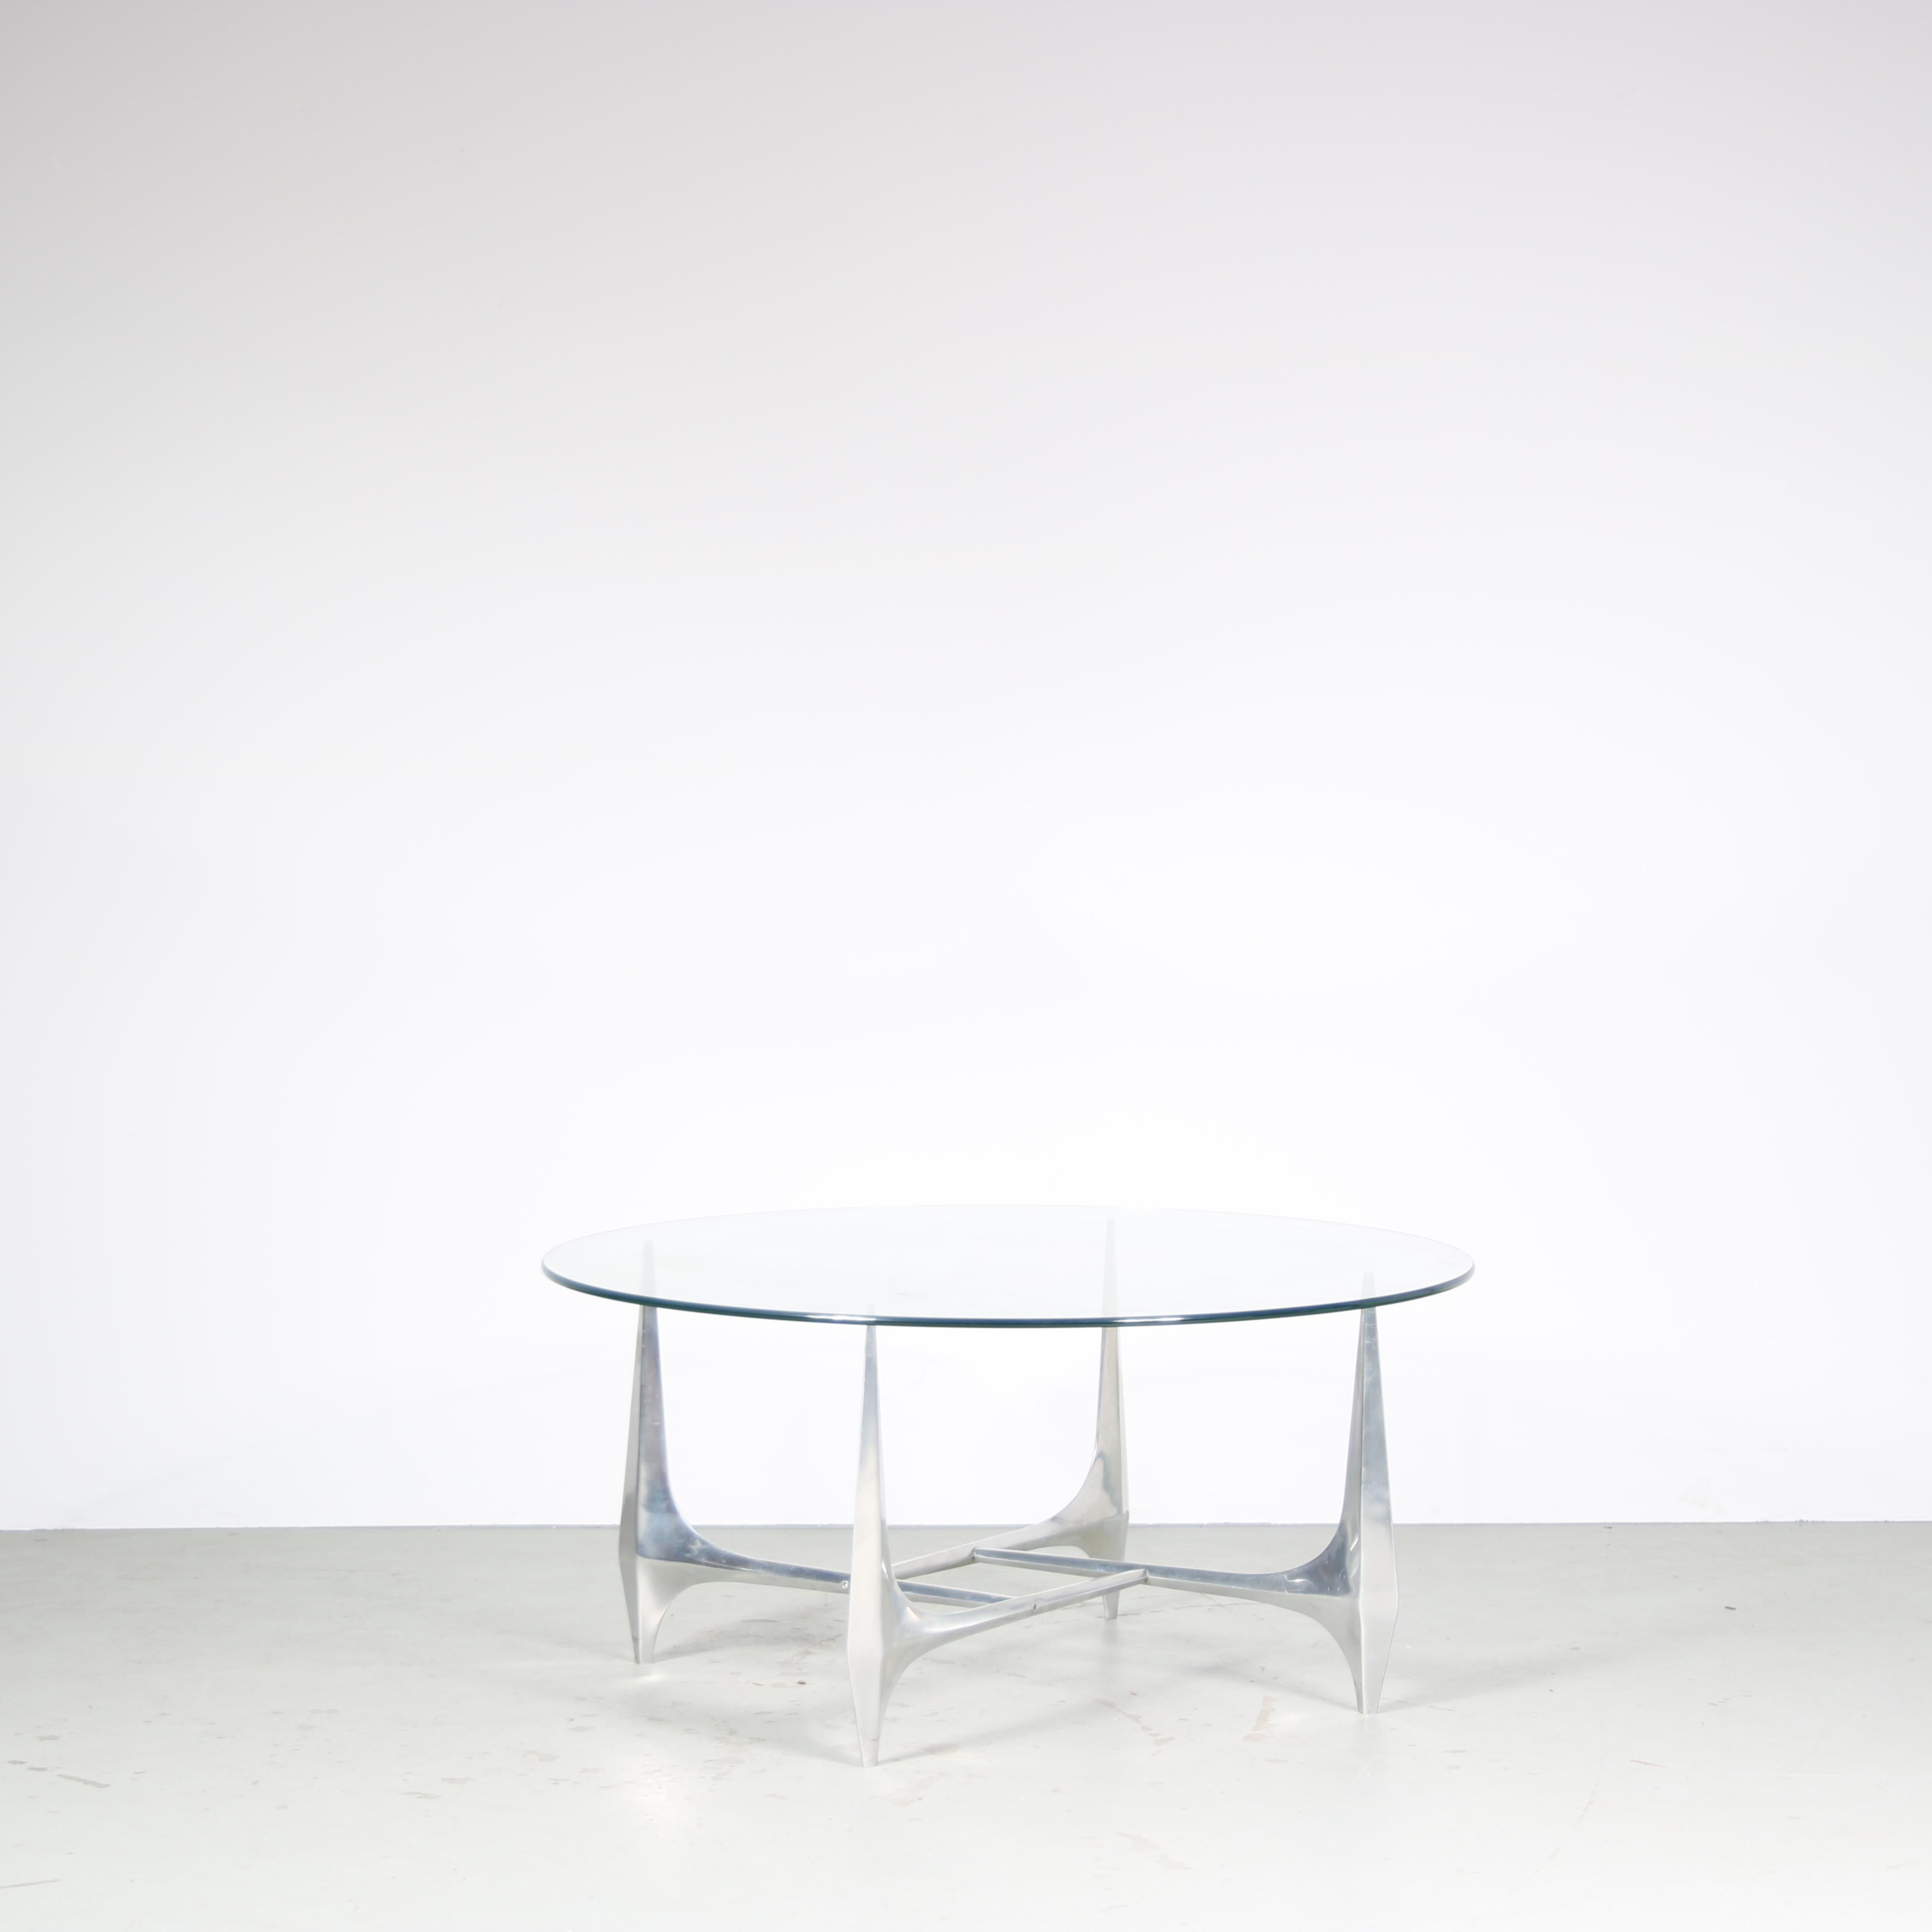 Une belle table basse, conçue par Knut Hesterberg et fabriquée par Ronald Schimdt en Allemagne vers 1960.

Cette table accrocheuse est dotée d'une base en aluminium, de forme élégante, chaque pied se rejoignant en un magnifique centre carré. Le